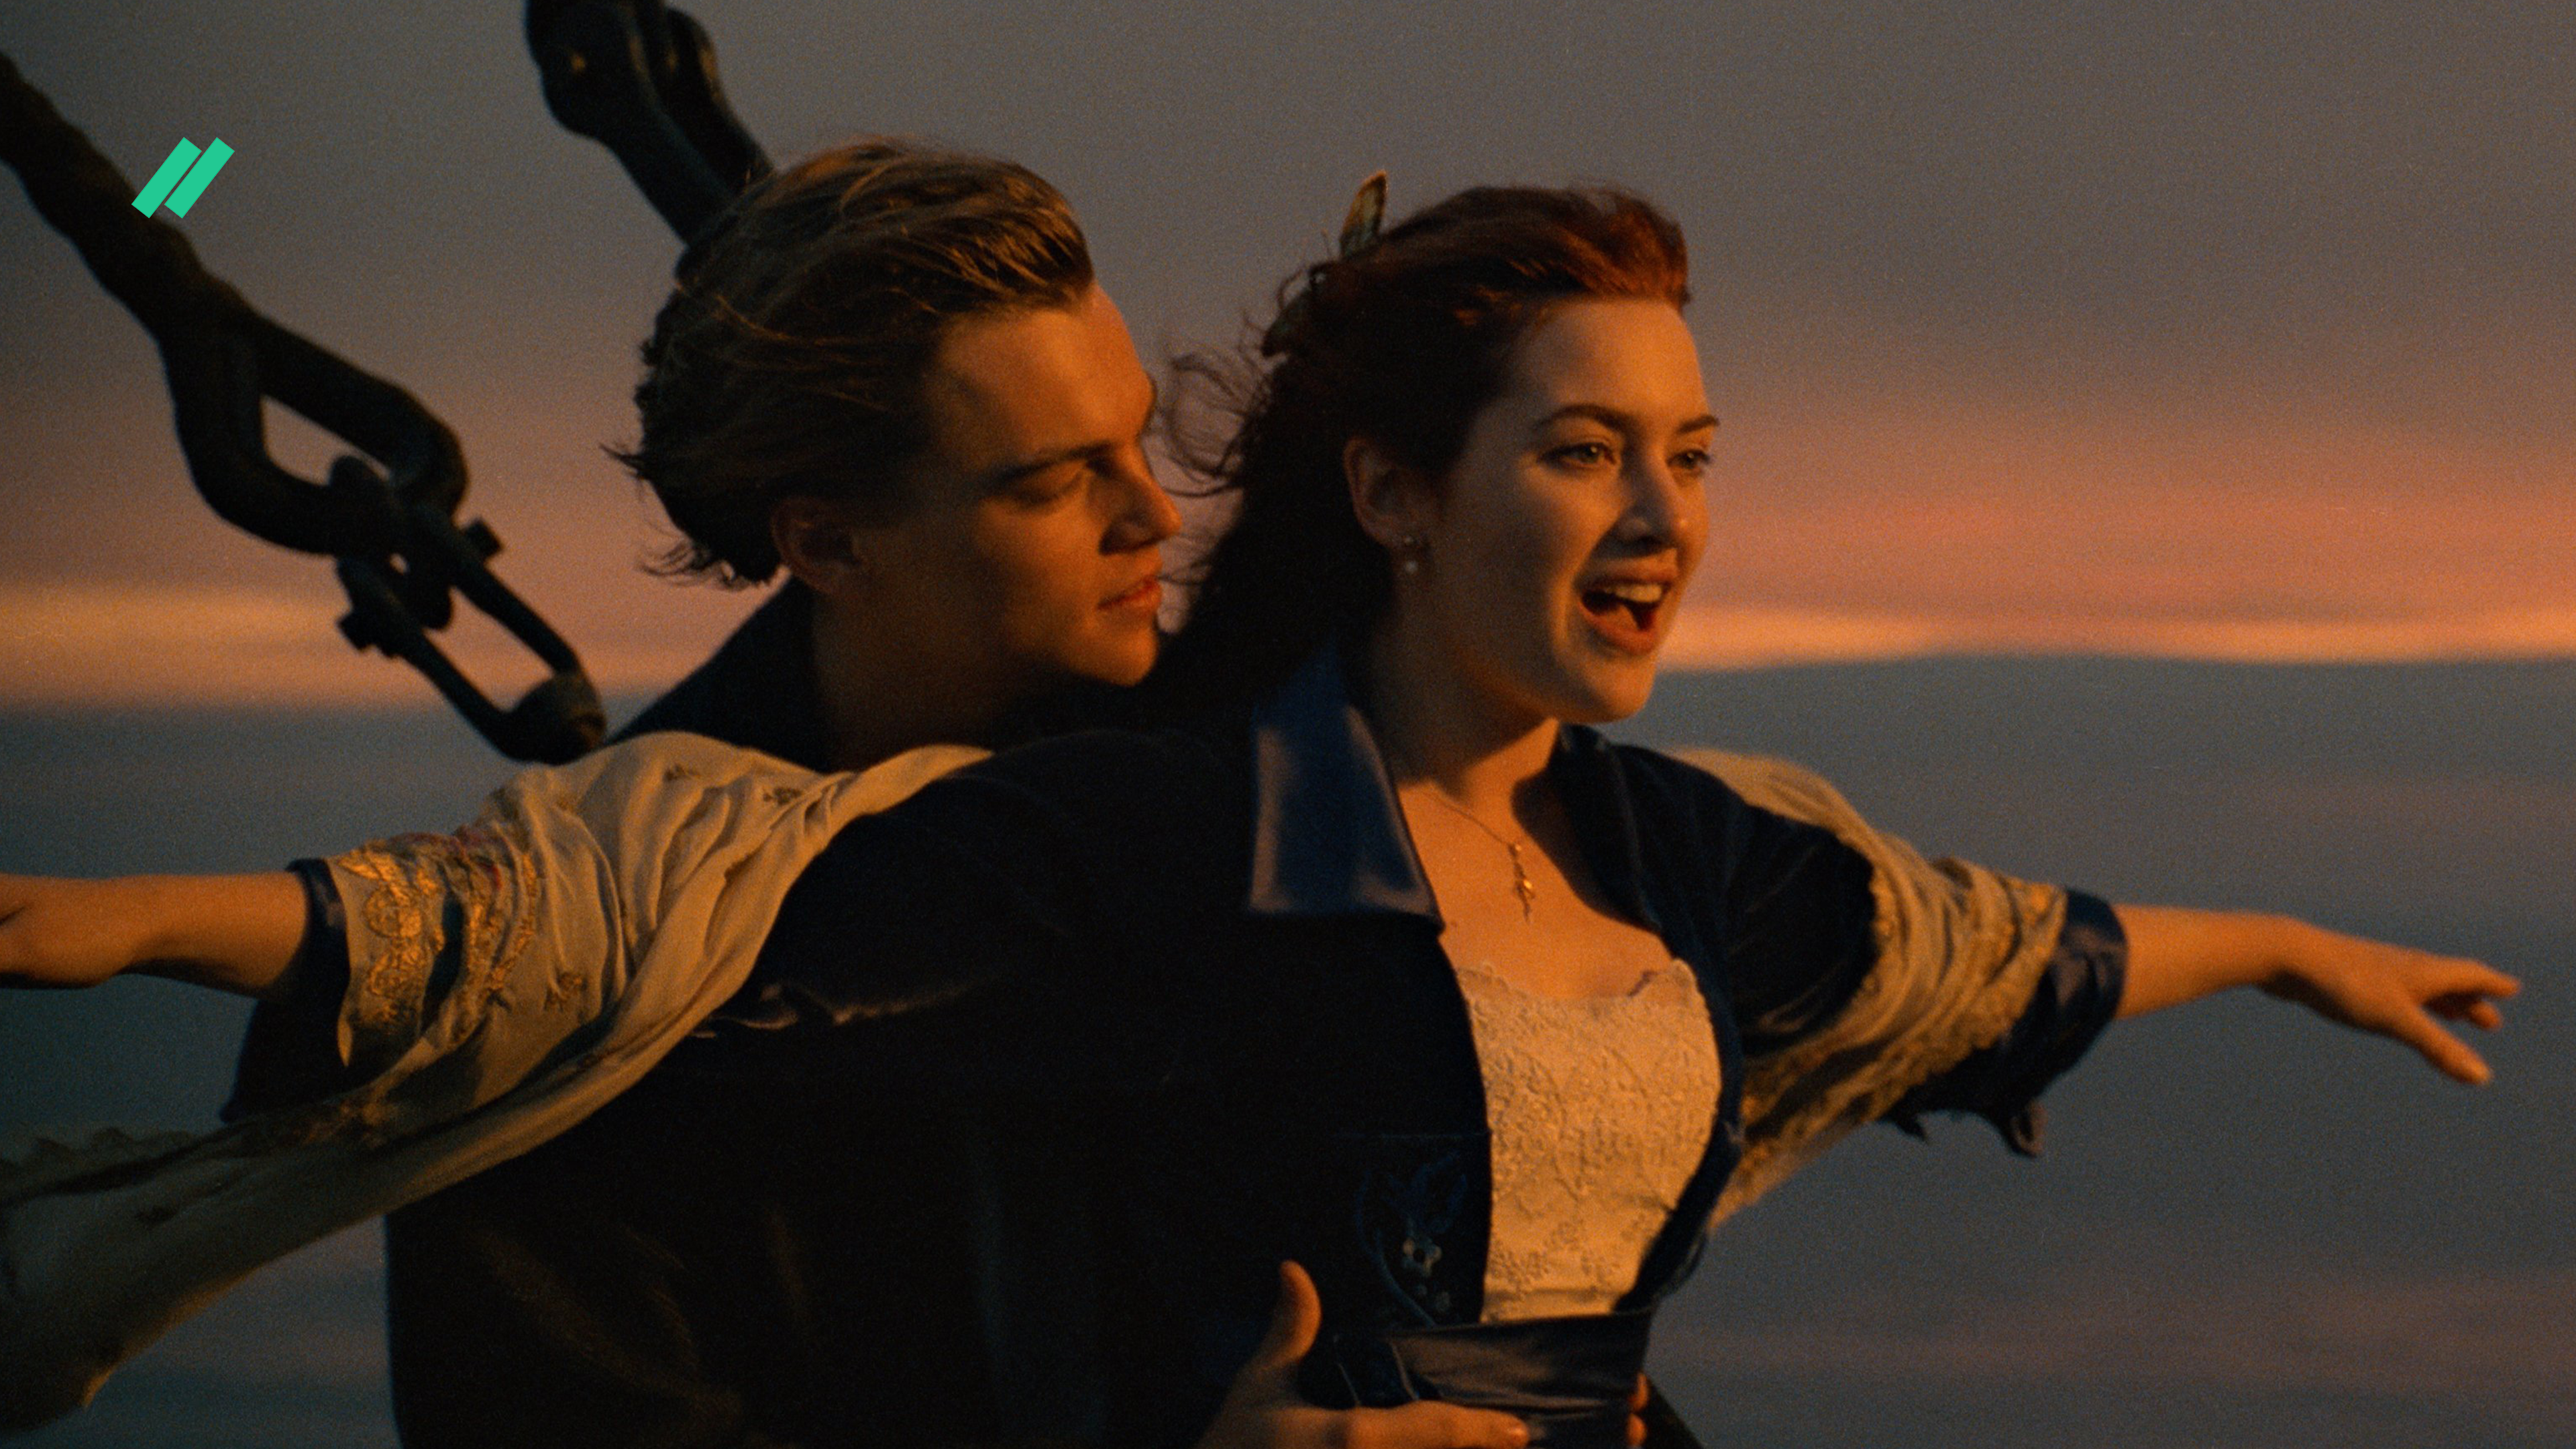 Лучшие фрагменты песен. Титаник 1997. Леонардо ди Каприо Титаник. Элайджа Вуд на самокате.